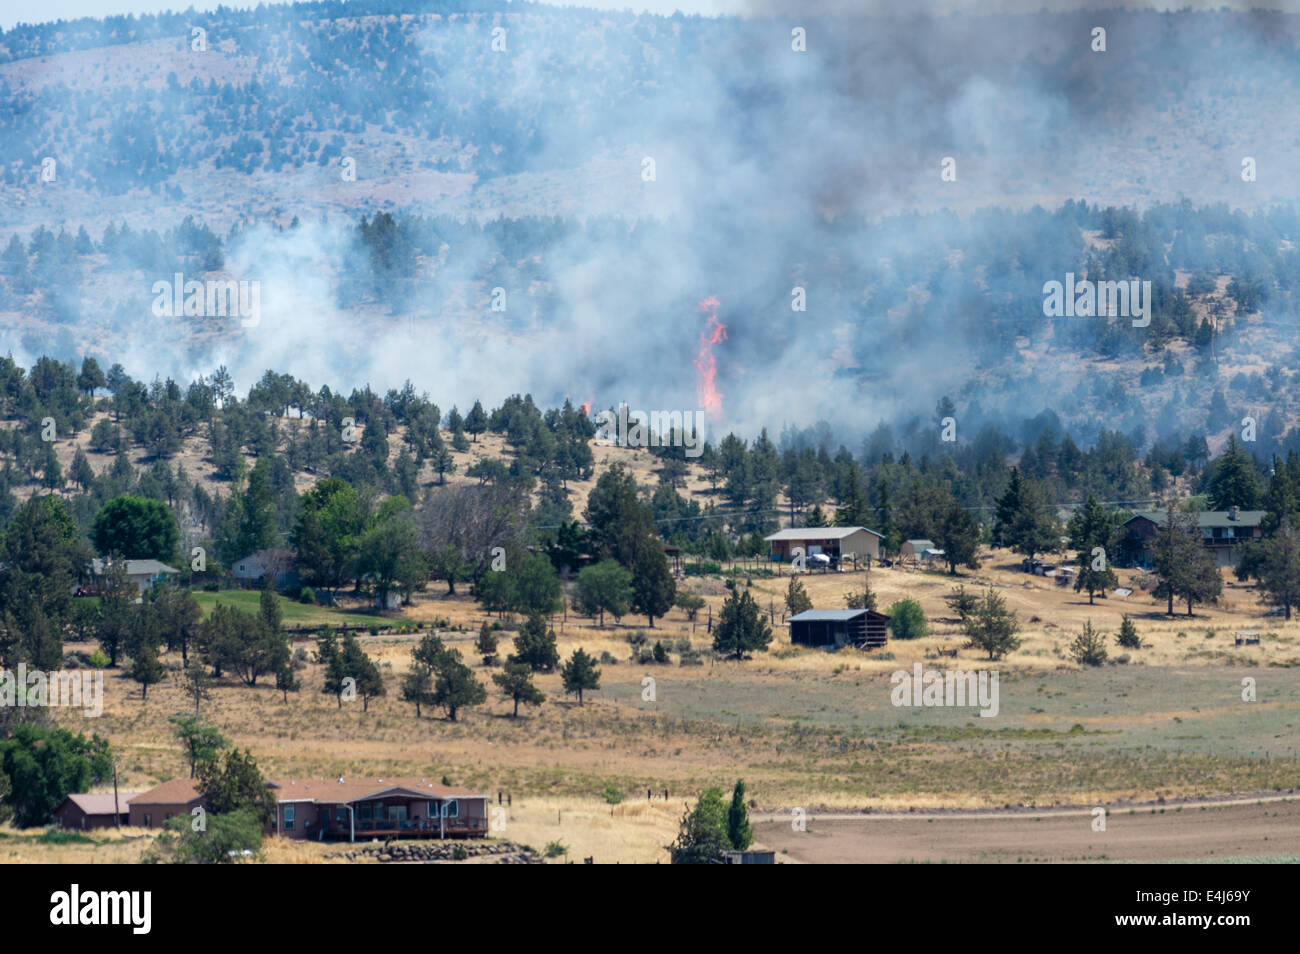 MADRAS, OREGON, Aprile 12th, 2014. Un wildfire erutta fiamme in prossimità di abitazioni e annessi appena fuori la città di Madras, Oregon nel centro di Oregon. Foto Stock